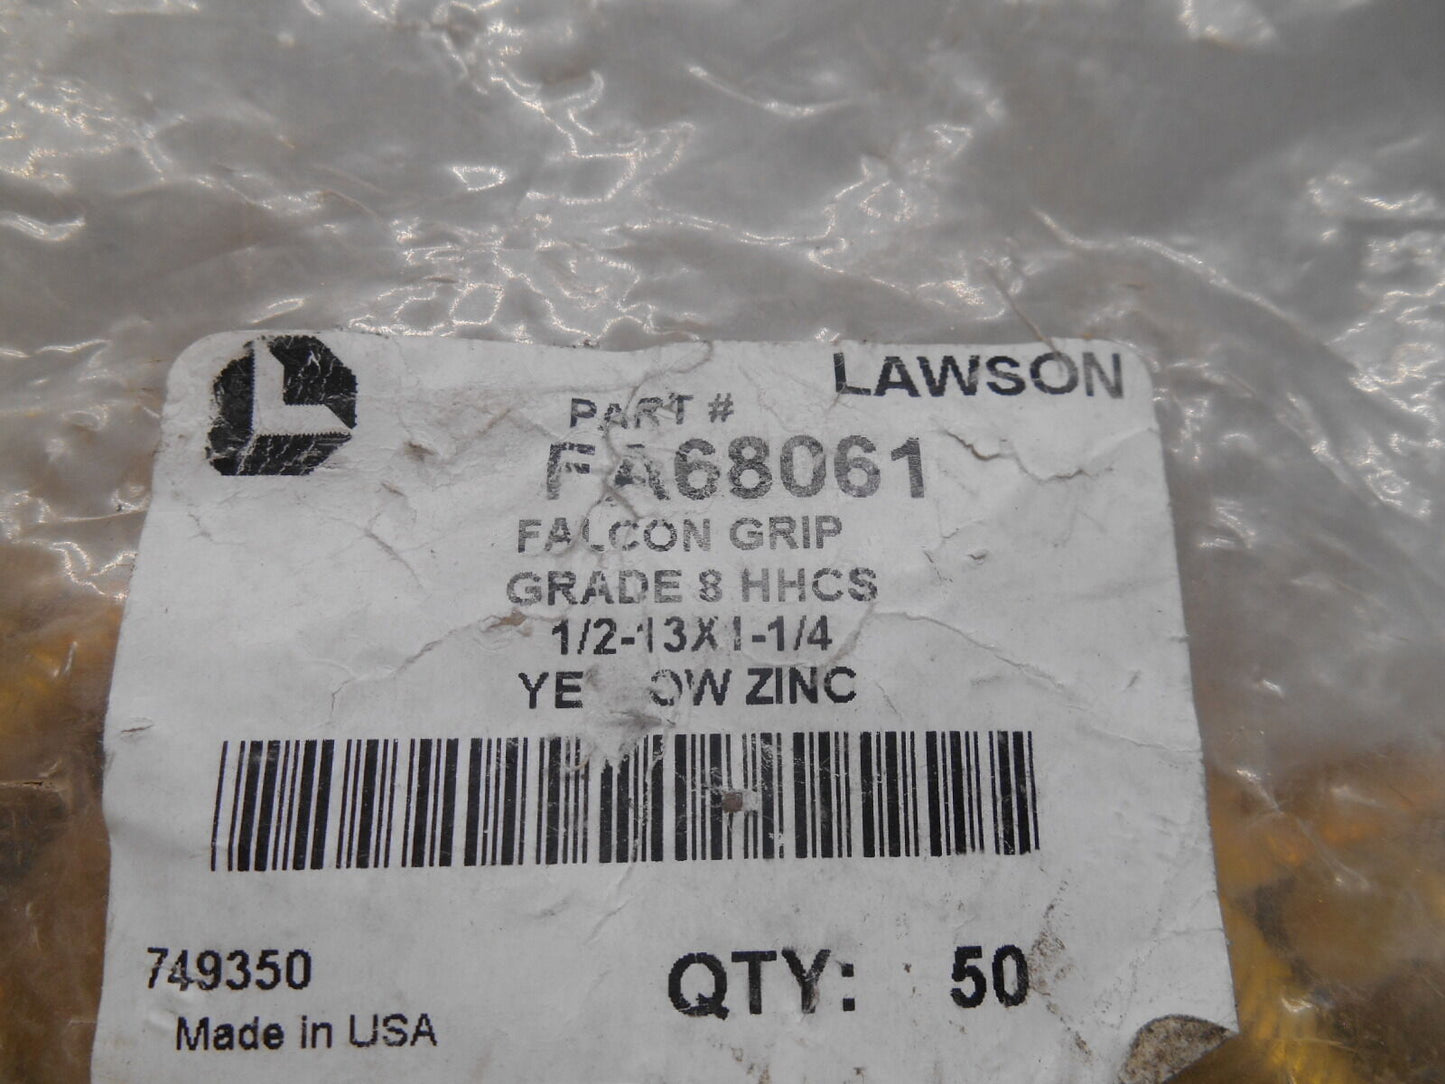 LOT OF 50 LAWSON FA68061 FALCONGRIP GRADE 8 ½-13 X 1-1/4” HEX CAP SCREW